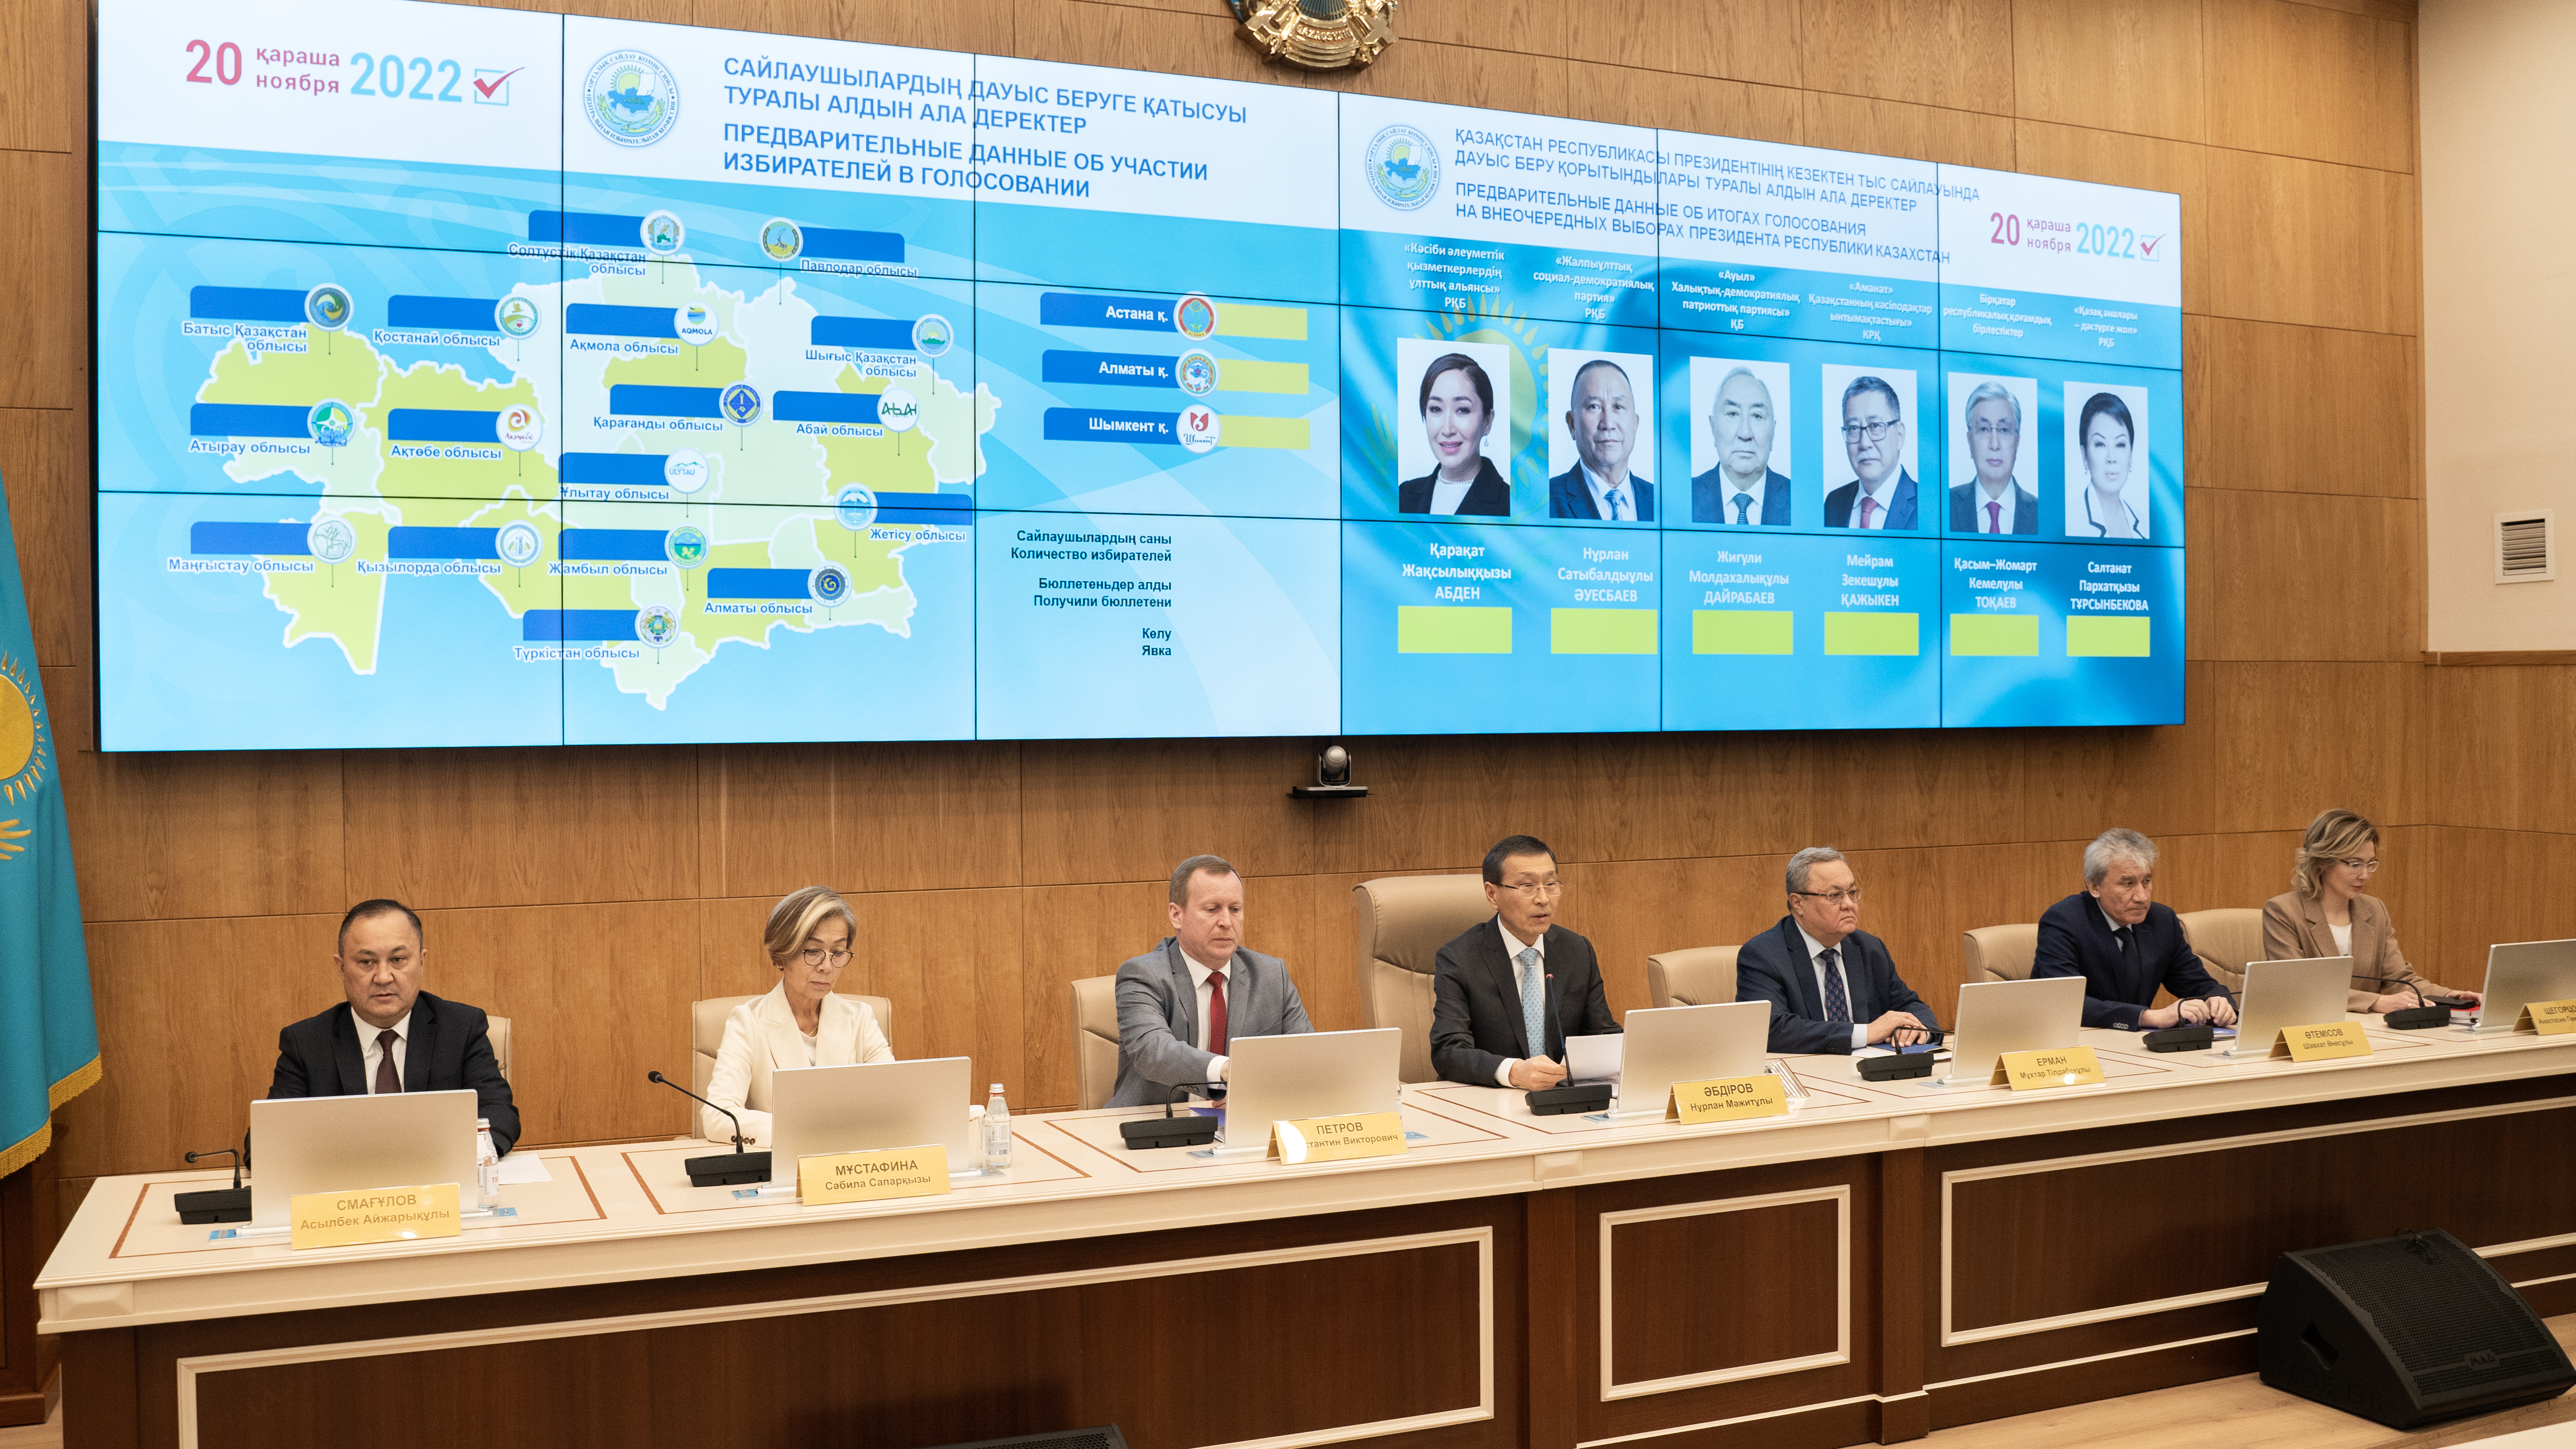 ЦИК объявила предварительные итоги выборов Президента РК